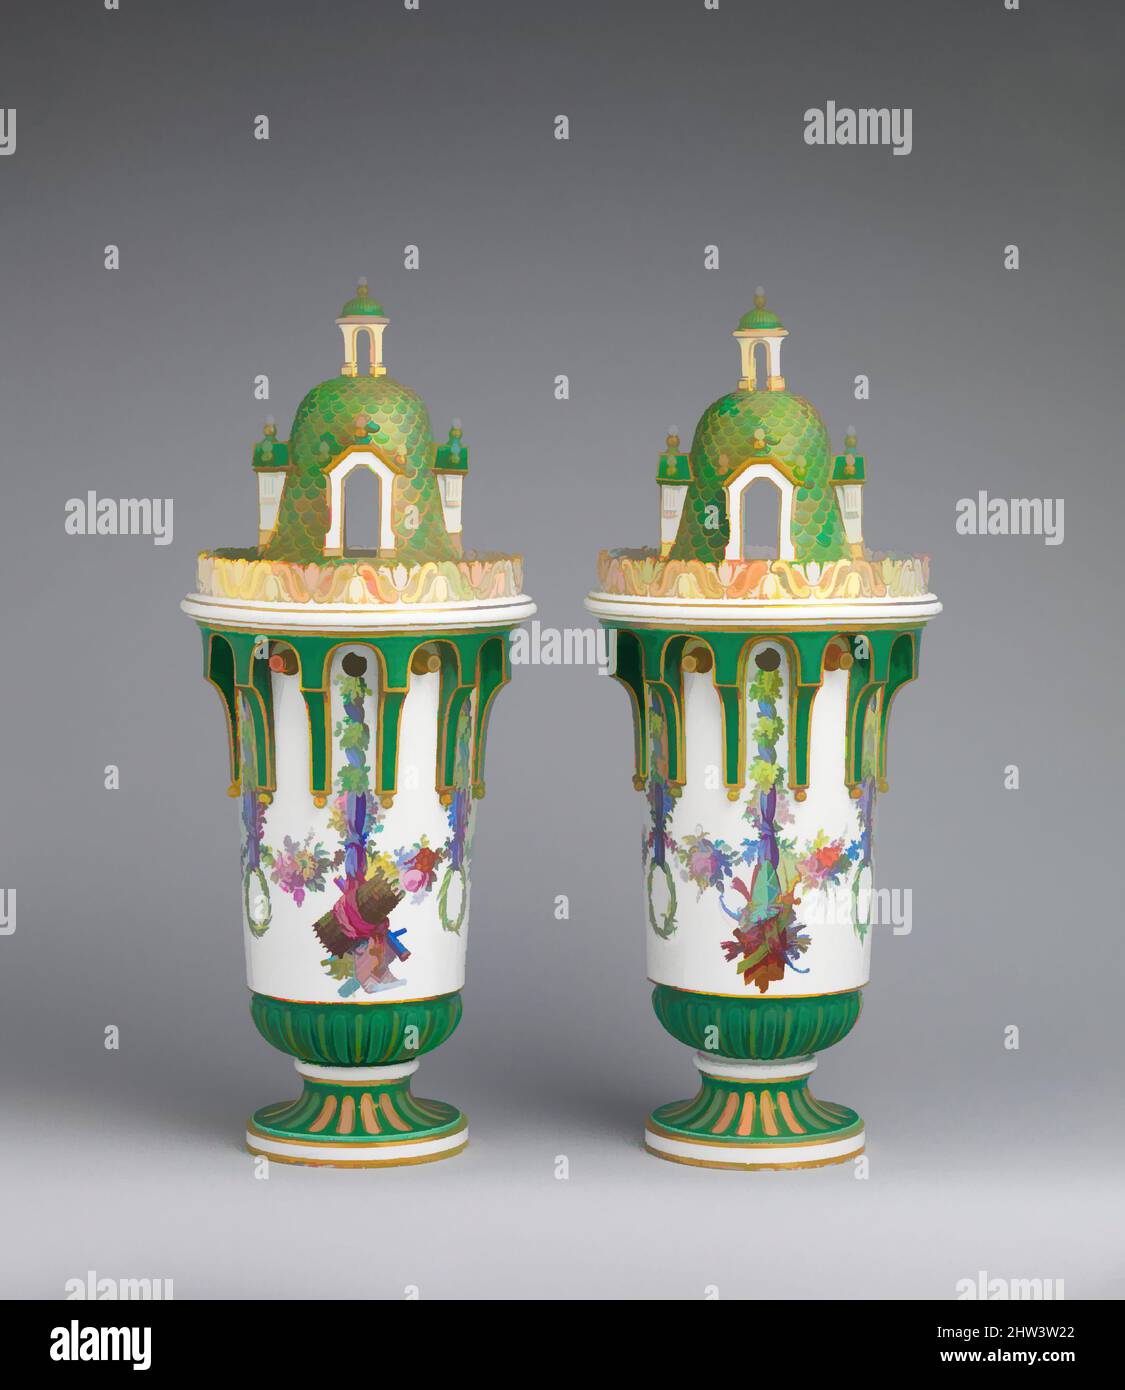 Kunst inspiriert von Vase mit Cover (Vase en Tour) (eine von einem Paar), ca. 1763, Französisch, Sèvres, Weichporzellan, insgesamt (bestätigt): H. 20 1/8 x B. 8 1/4 x D. 7 7/8 Zoll (51,1 x 21 x 20-20,5 cm), Keramik-Porzellan, aufgrund der funktionalen Natur der Dienstleistungen zum Essen oder zum Tee gemacht, Classic Works modernisiert von Artotop mit einem Schuss Moderne. Formen, Farbe und Wert, auffällige visuelle Wirkung auf Kunst. Emotionen durch Freiheit von Kunstwerken auf zeitgemäße Weise. Eine zeitlose Botschaft, die eine wild kreative neue Richtung verfolgt. Künstler, die sich dem digitalen Medium zuwenden und die Artotop NFT erschaffen Stockfoto